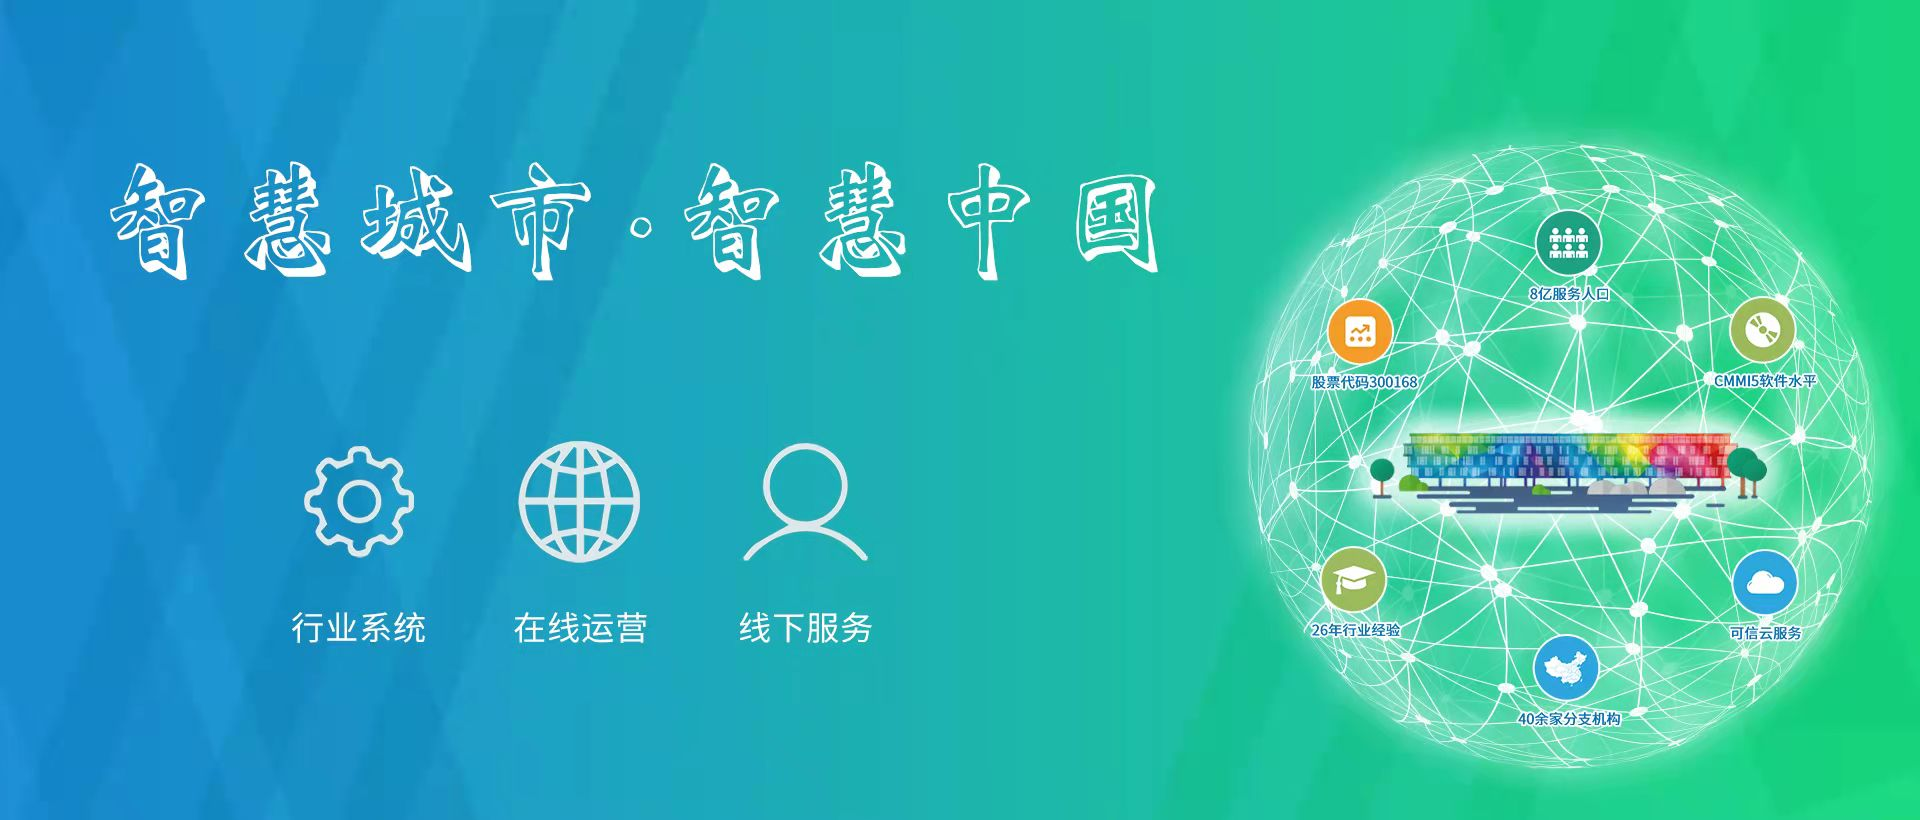 上海万达信息系统有限公司CMMI5认证